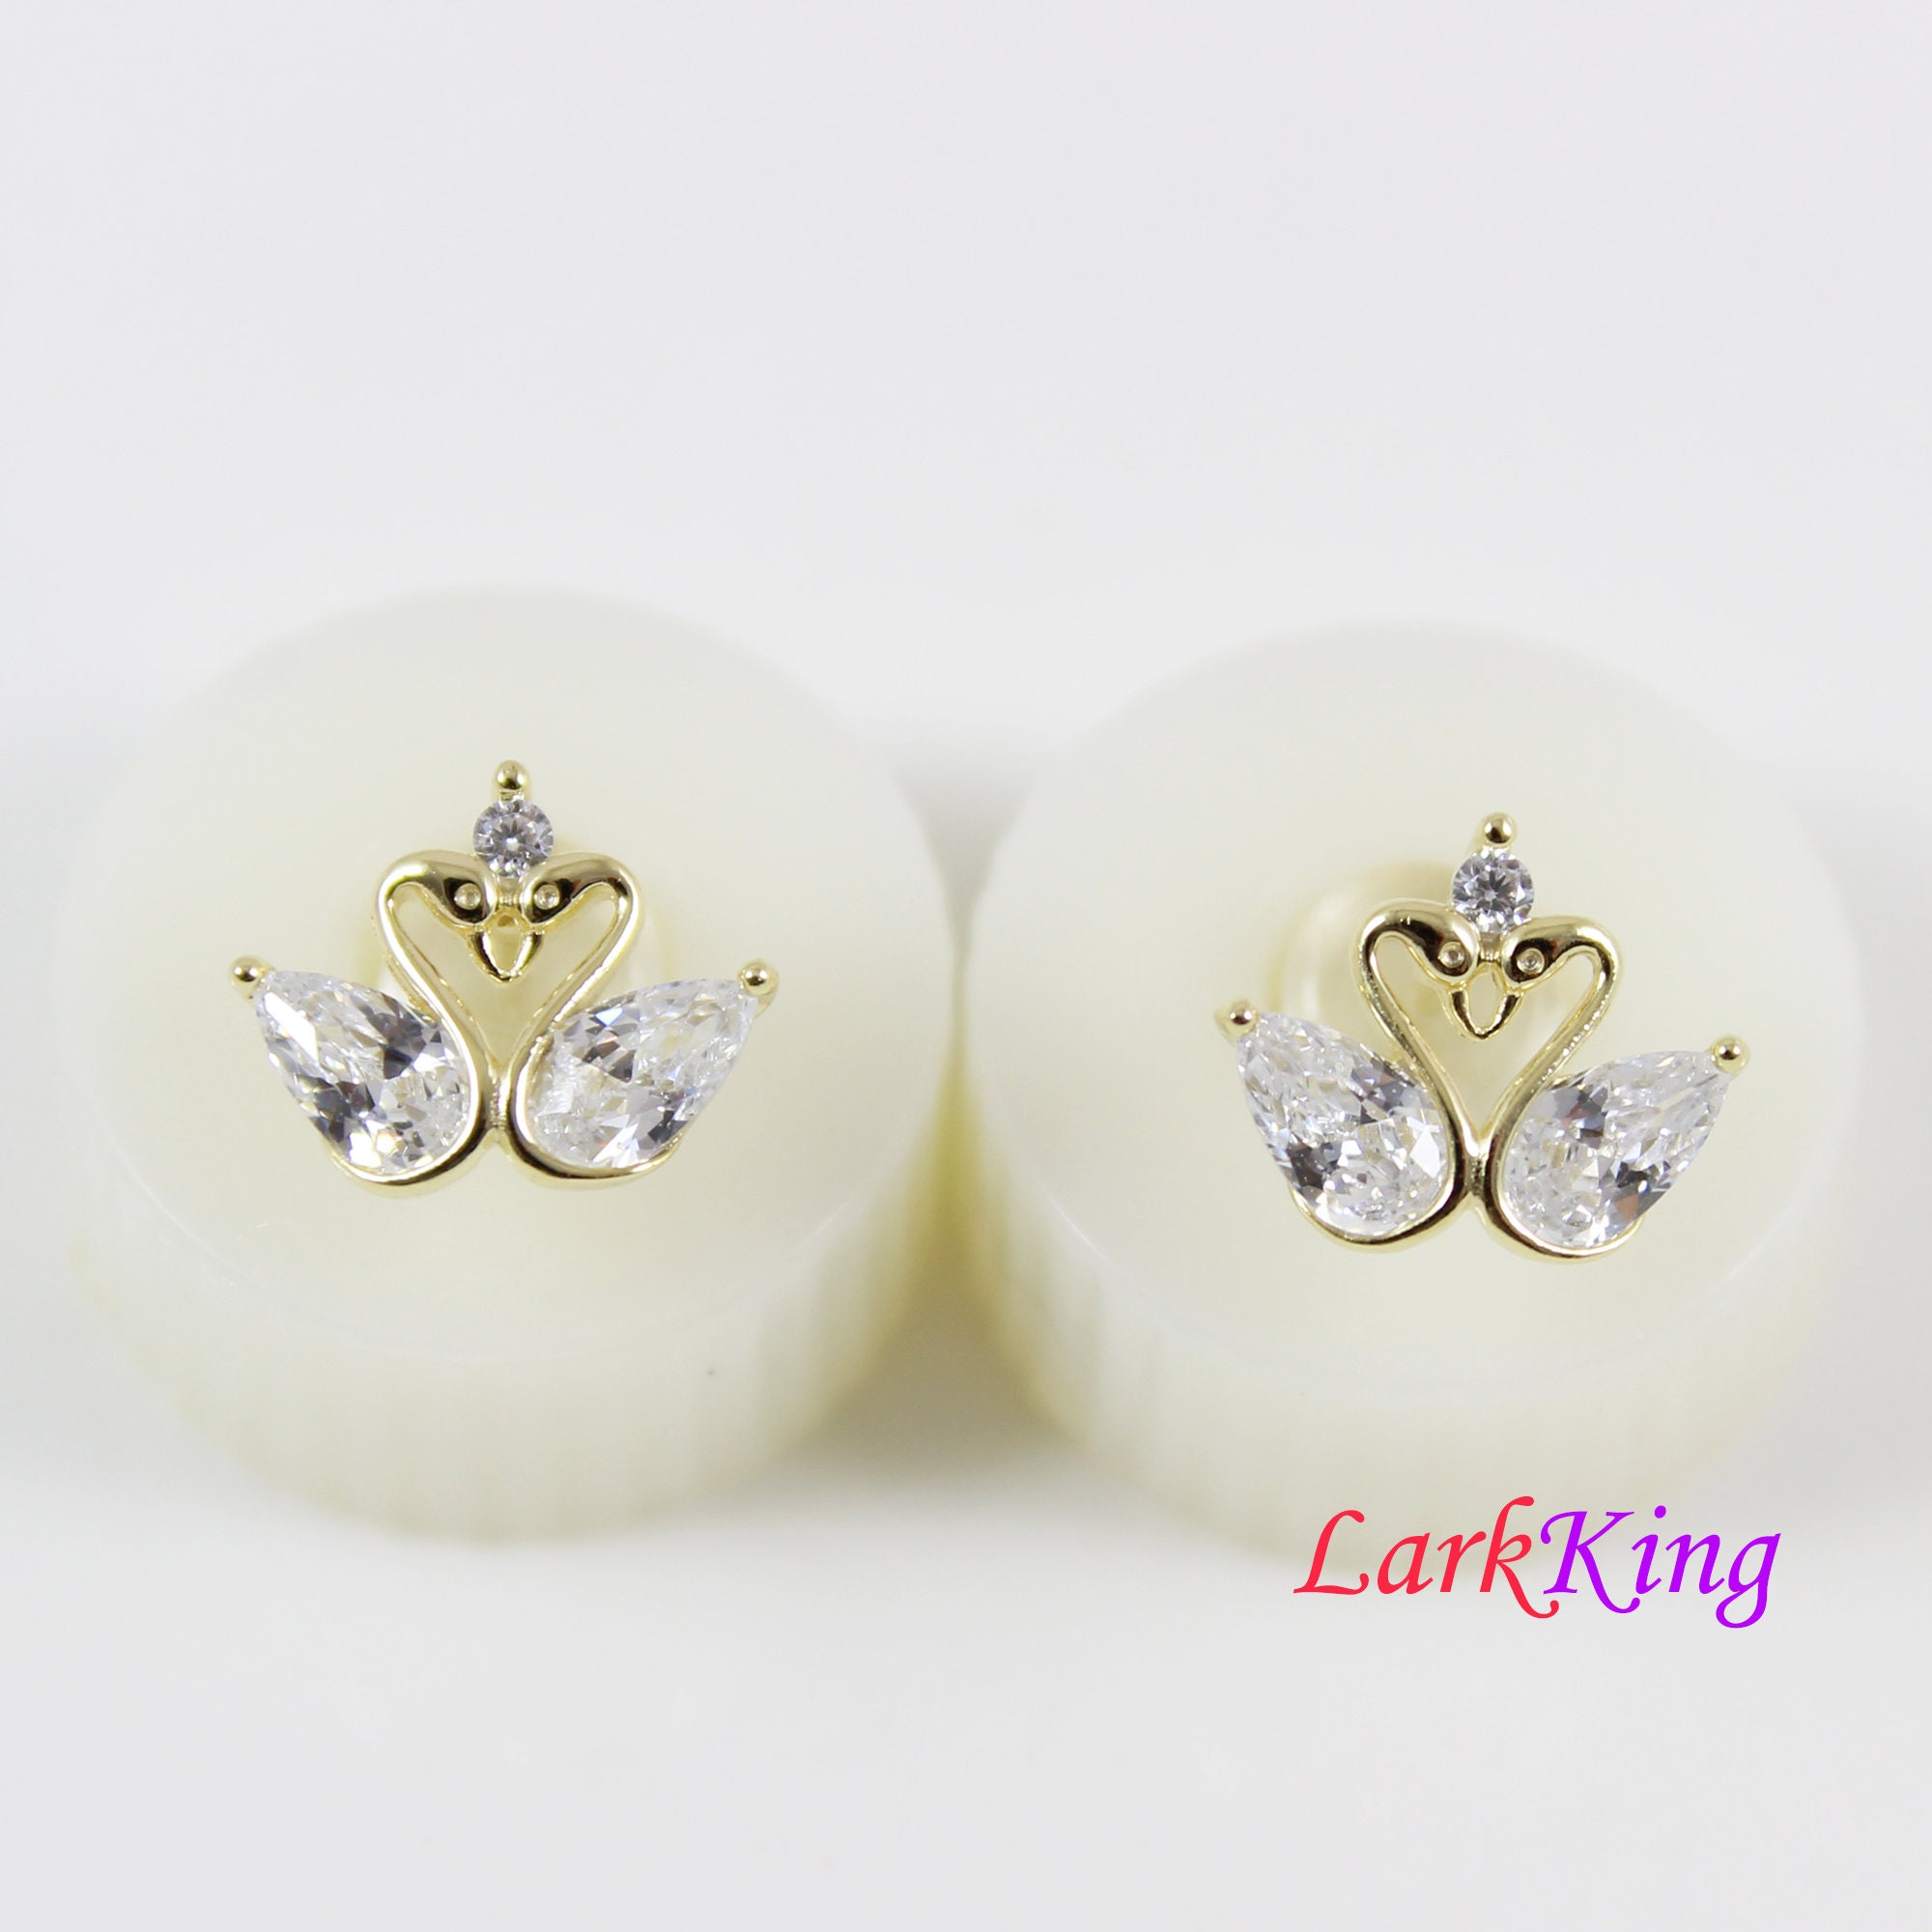 Sterling silver stud earrings couple swan stud earrings | Etsy